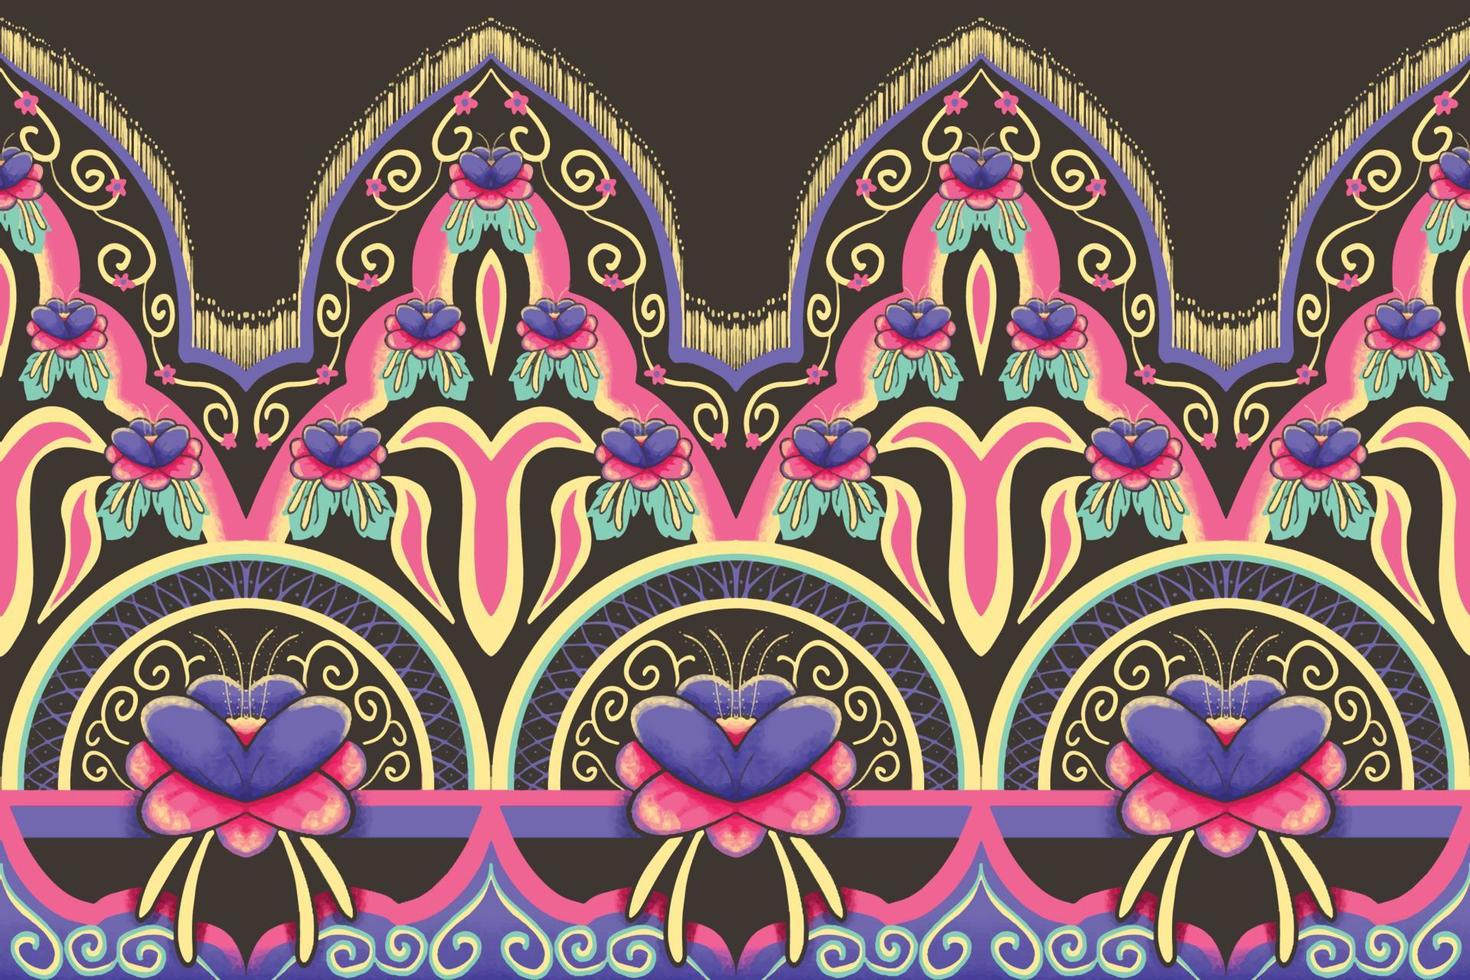 fiore rosa, viola, verde, giallo su marrone. disegno tradizionale geometrico etnico orientale modello per sfondo, tappeto, carta da parati, abbigliamento, confezionamento, batik, tessuto, illustrazione vettoriale stile ricamo